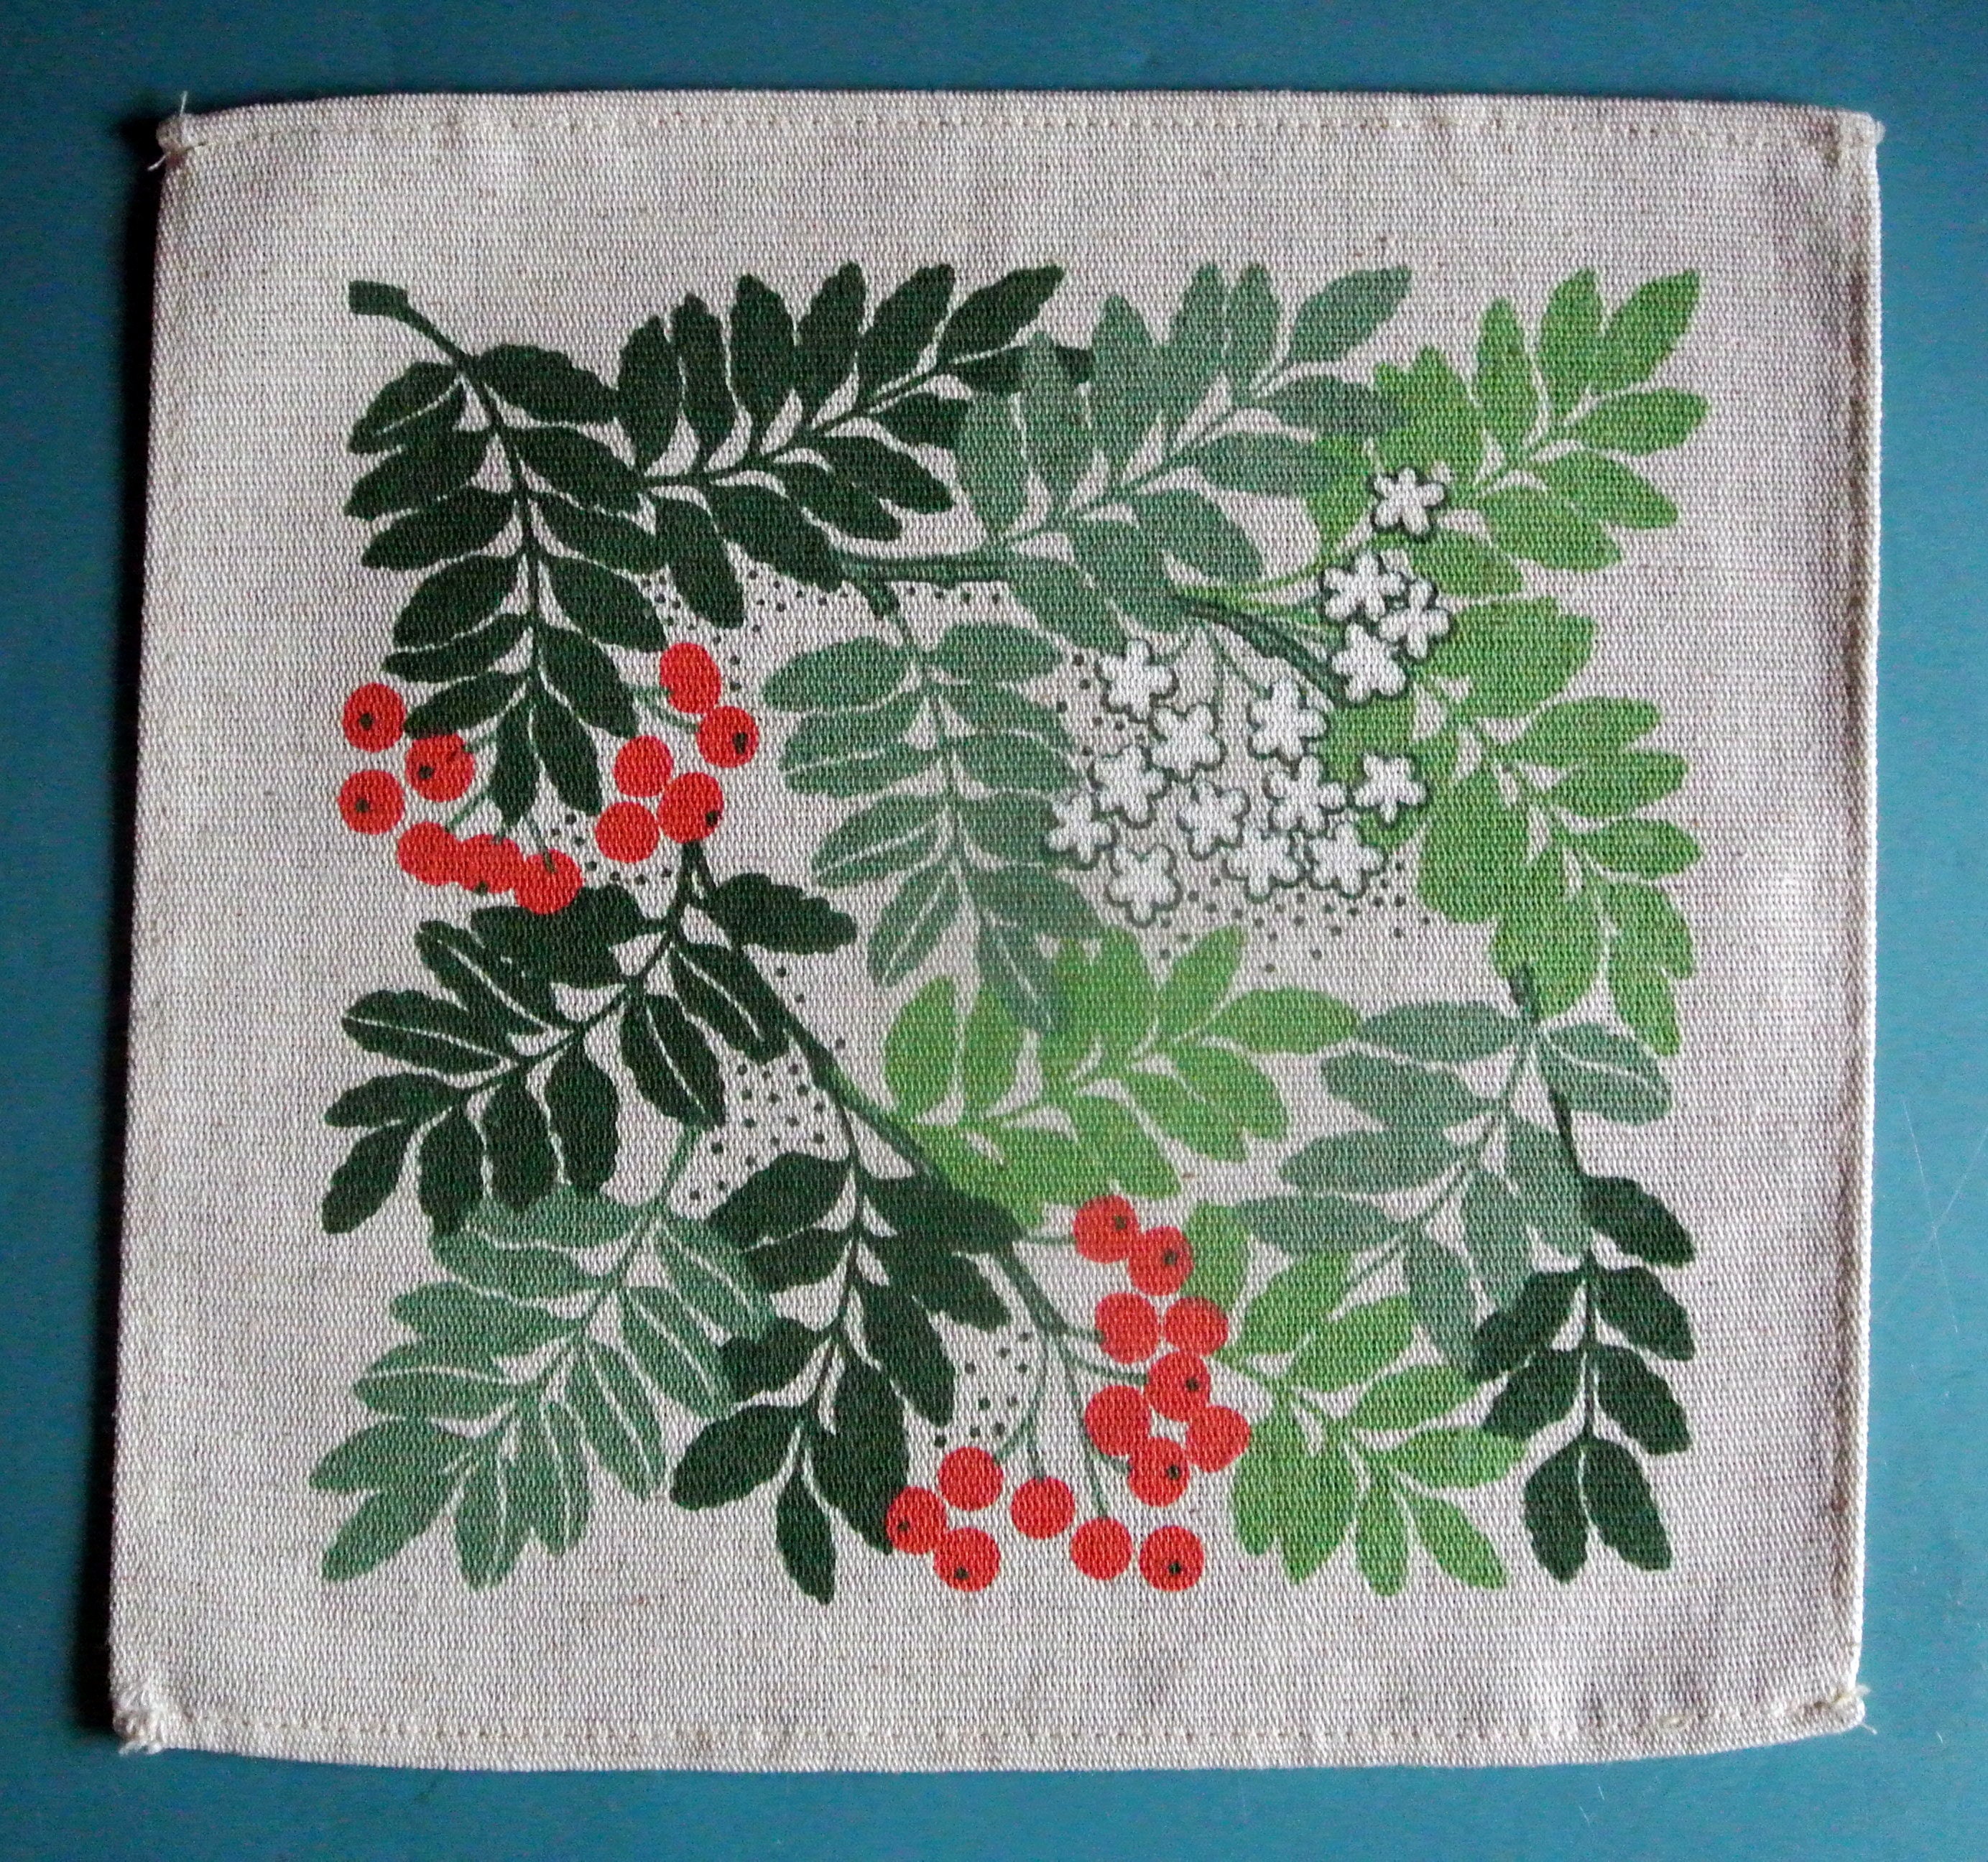 Swedish vintage 1970s printed linen design tablet tablecloth with large multicolor flower motive on light beige bottom